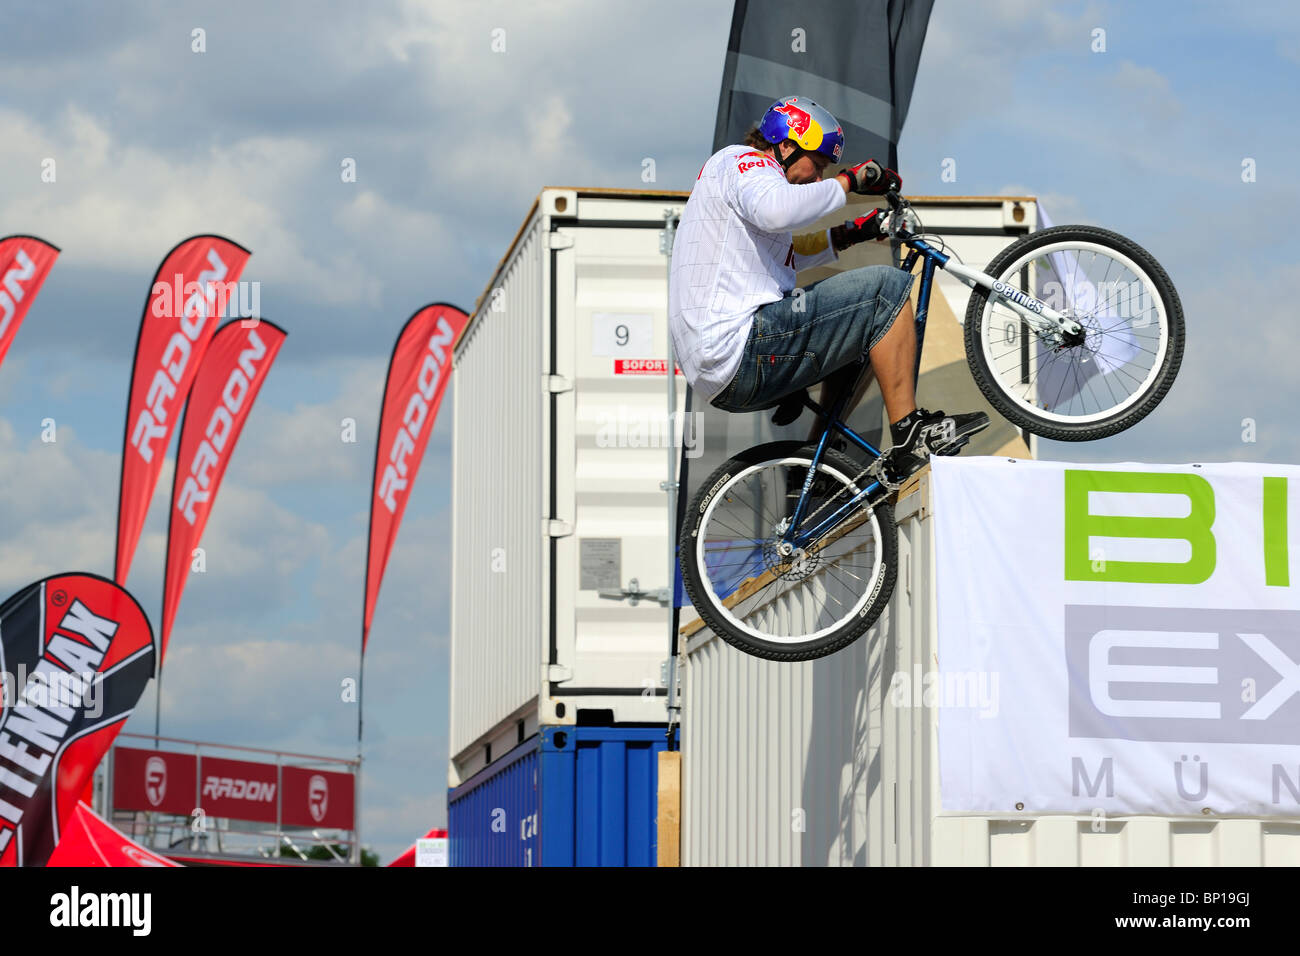 Welt-Champion Trial Biker Petr Kraus auf der Bike Expo in München zeigt einige seiner Tricks. Stockfoto